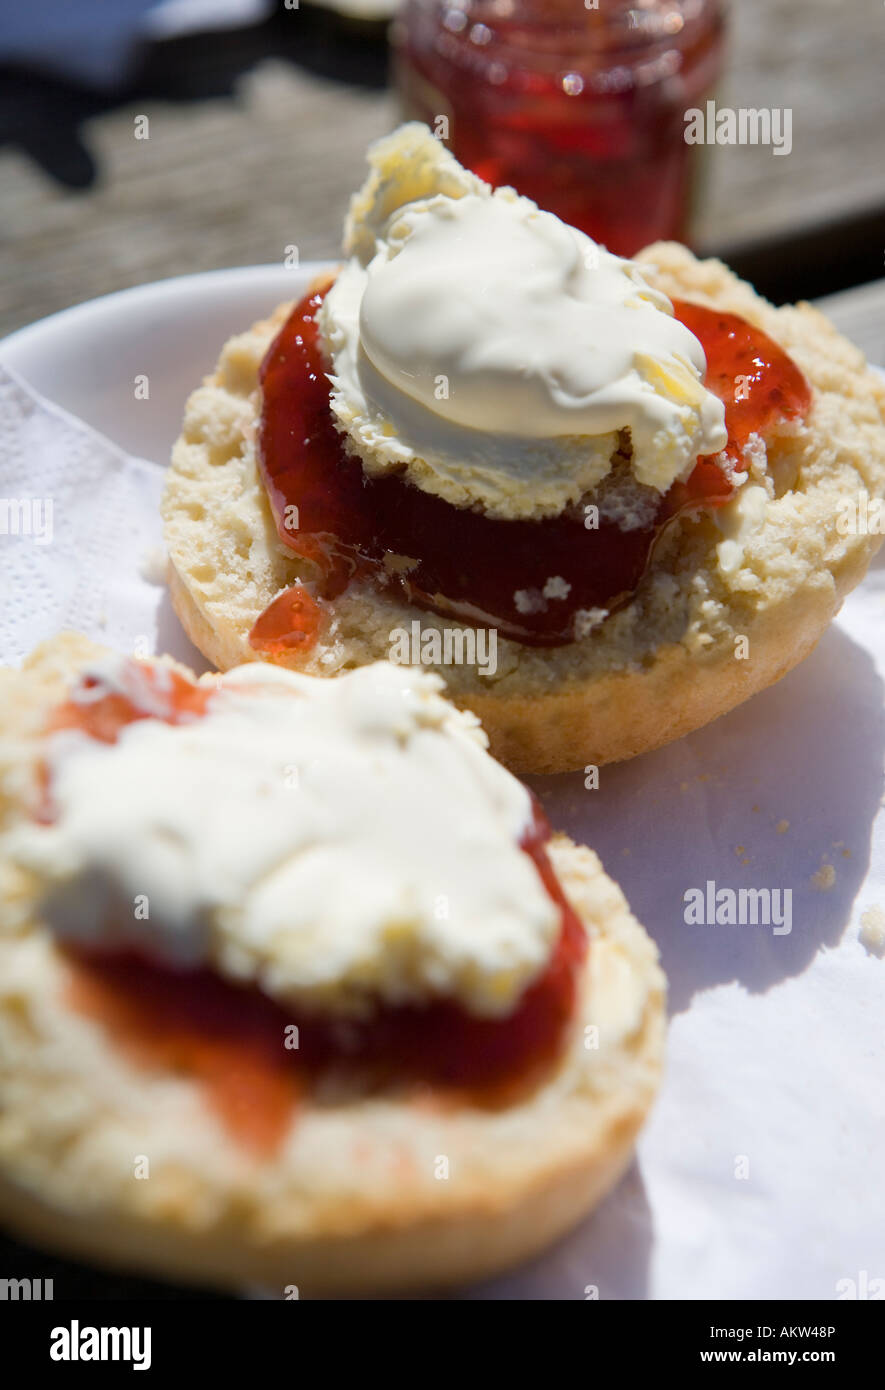 Traditional British cream tea with scones, jam and cream Stock Photo